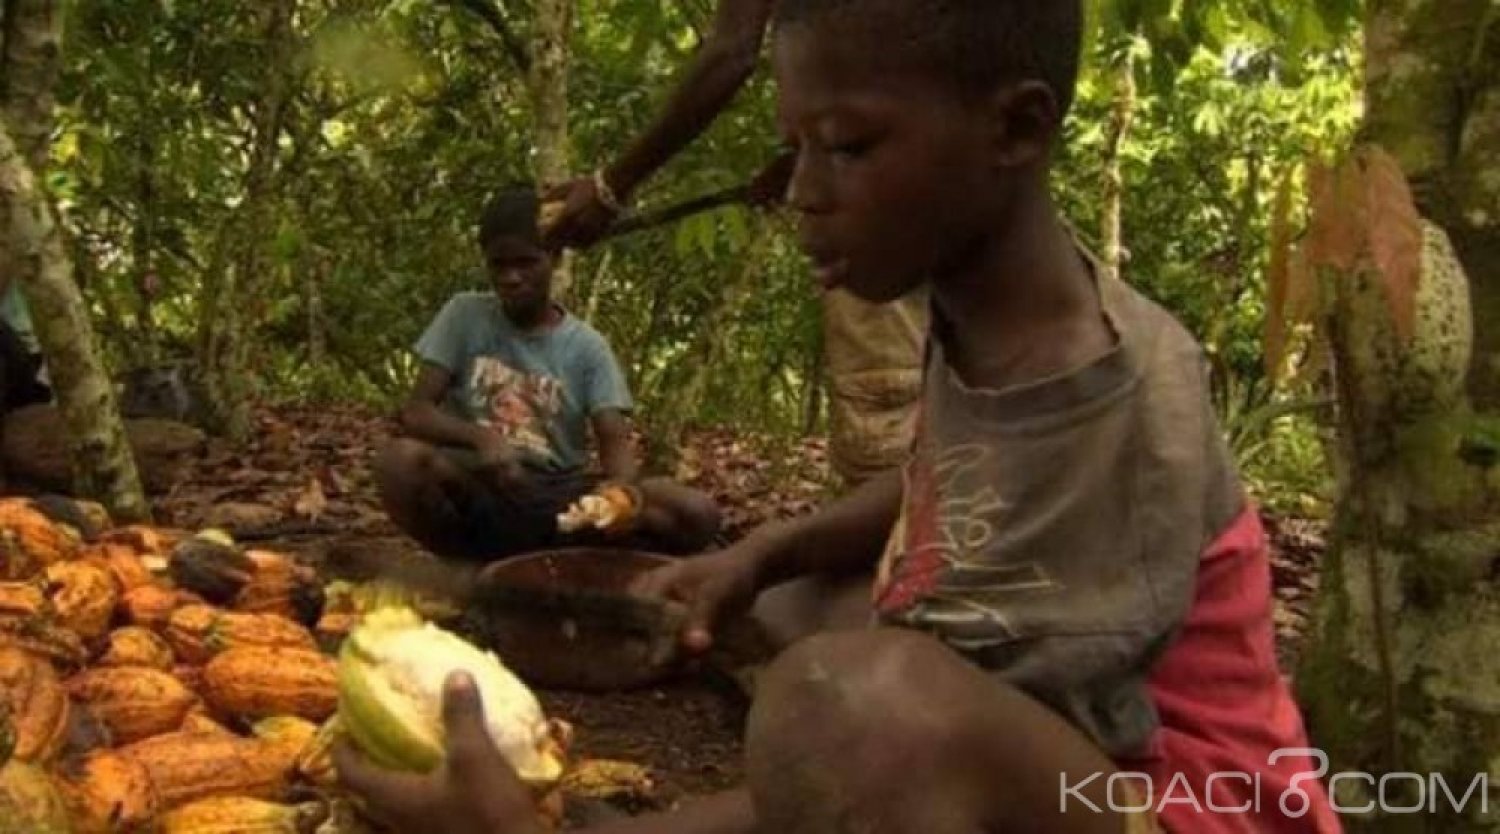 Côte d'Ivoire : Le cacao au centre de trafics et de travail d'enfants burkinabés, un documentaire censuré qui accable le pays